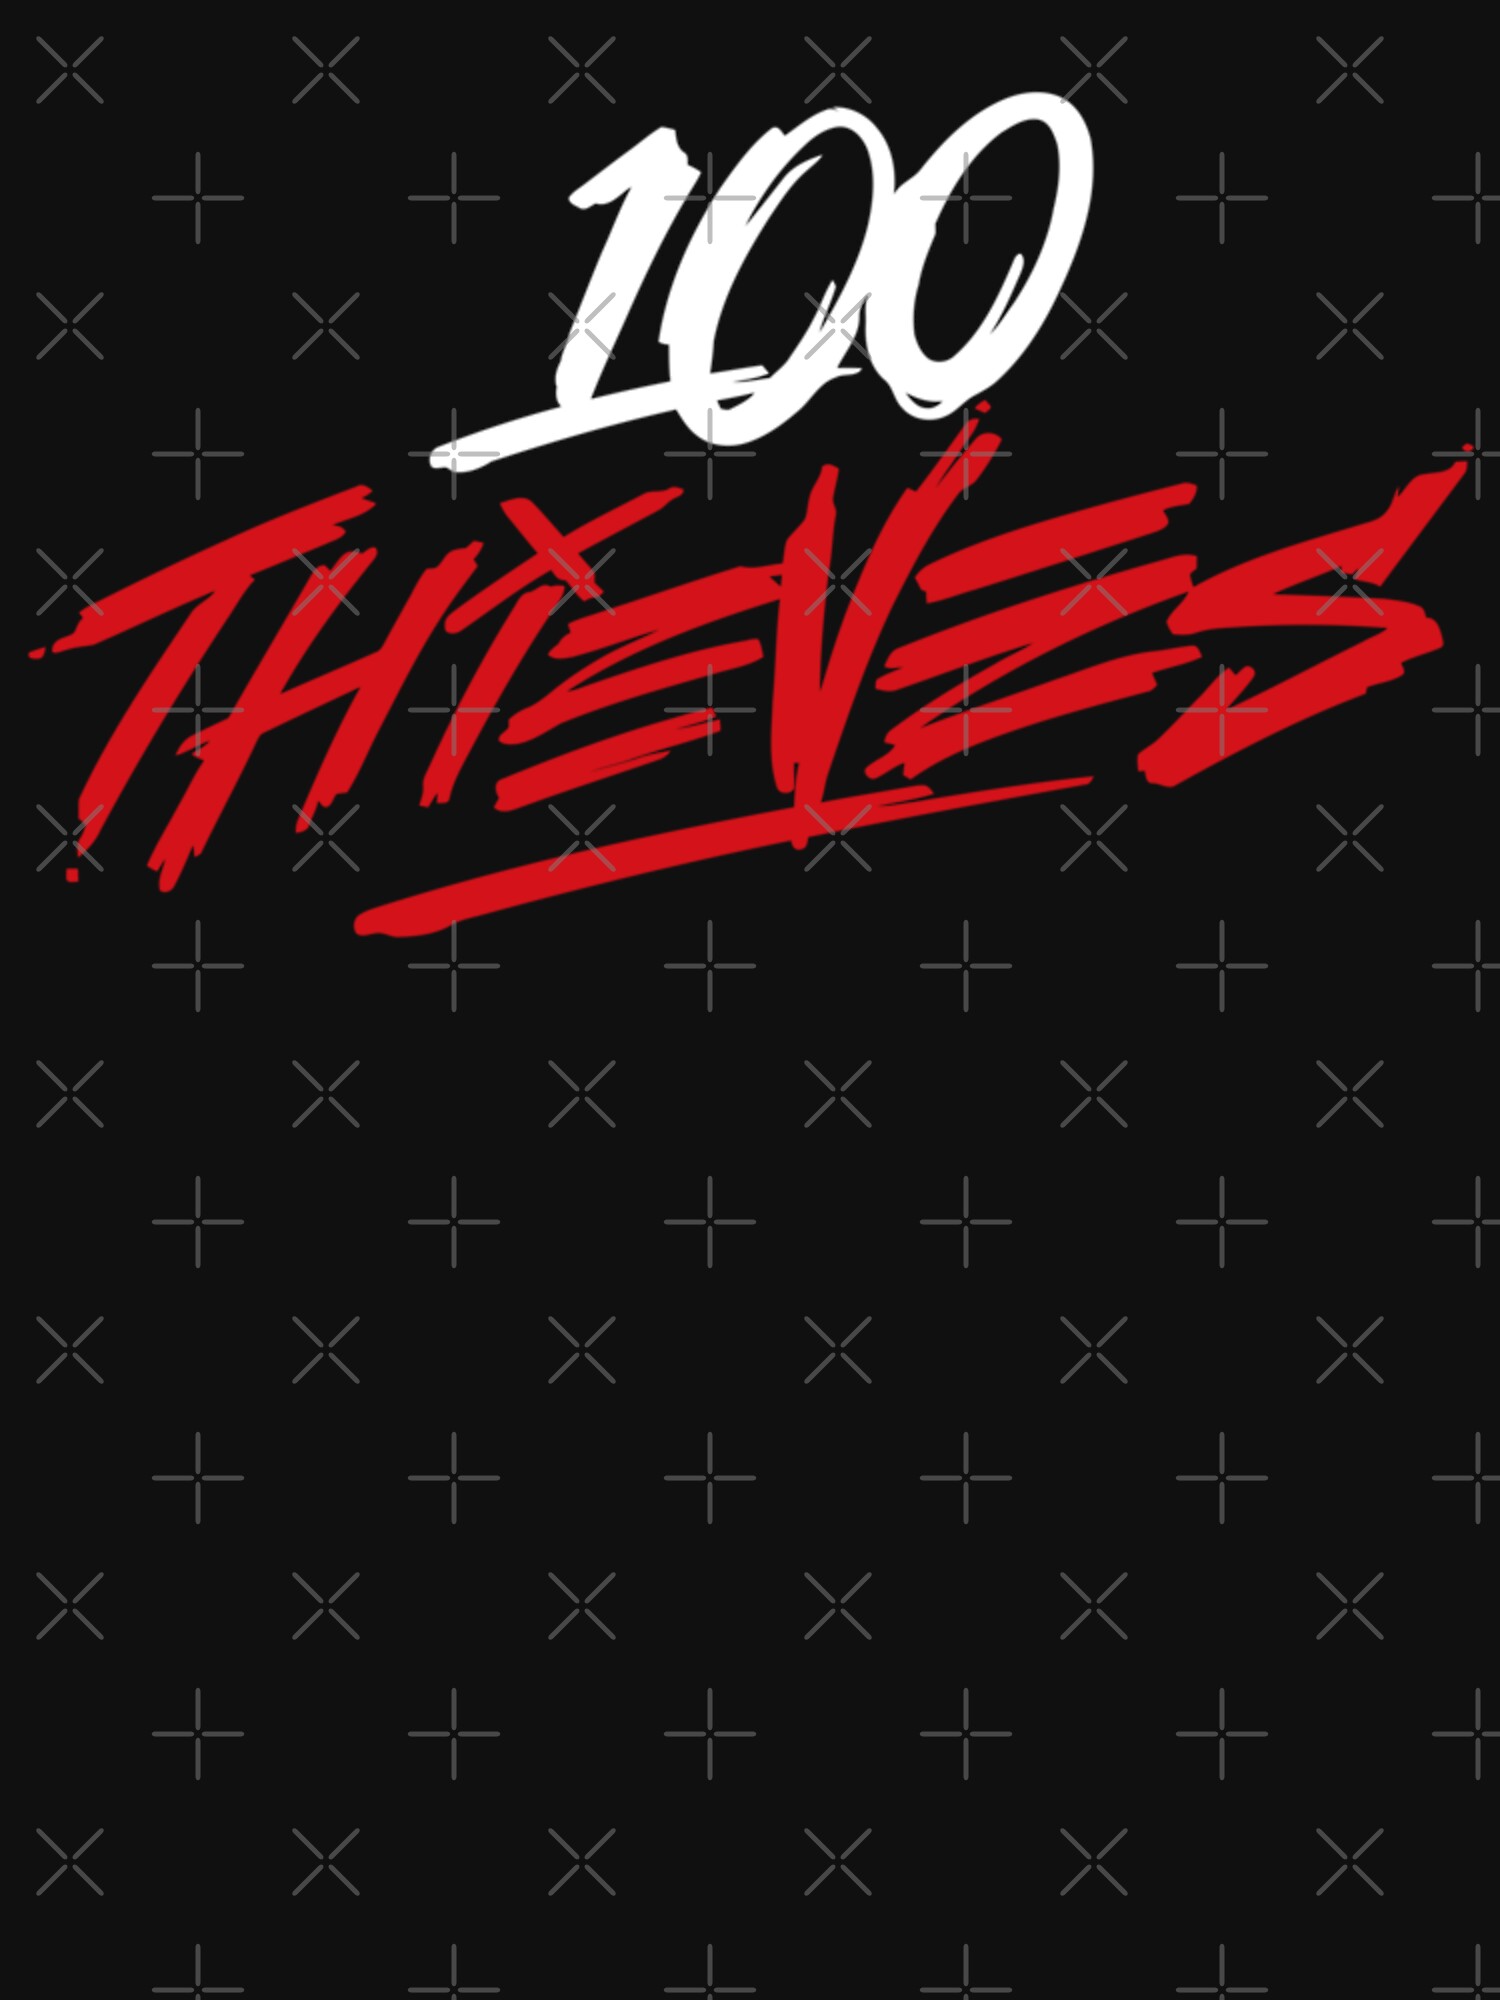 - 100 Thieves Shop